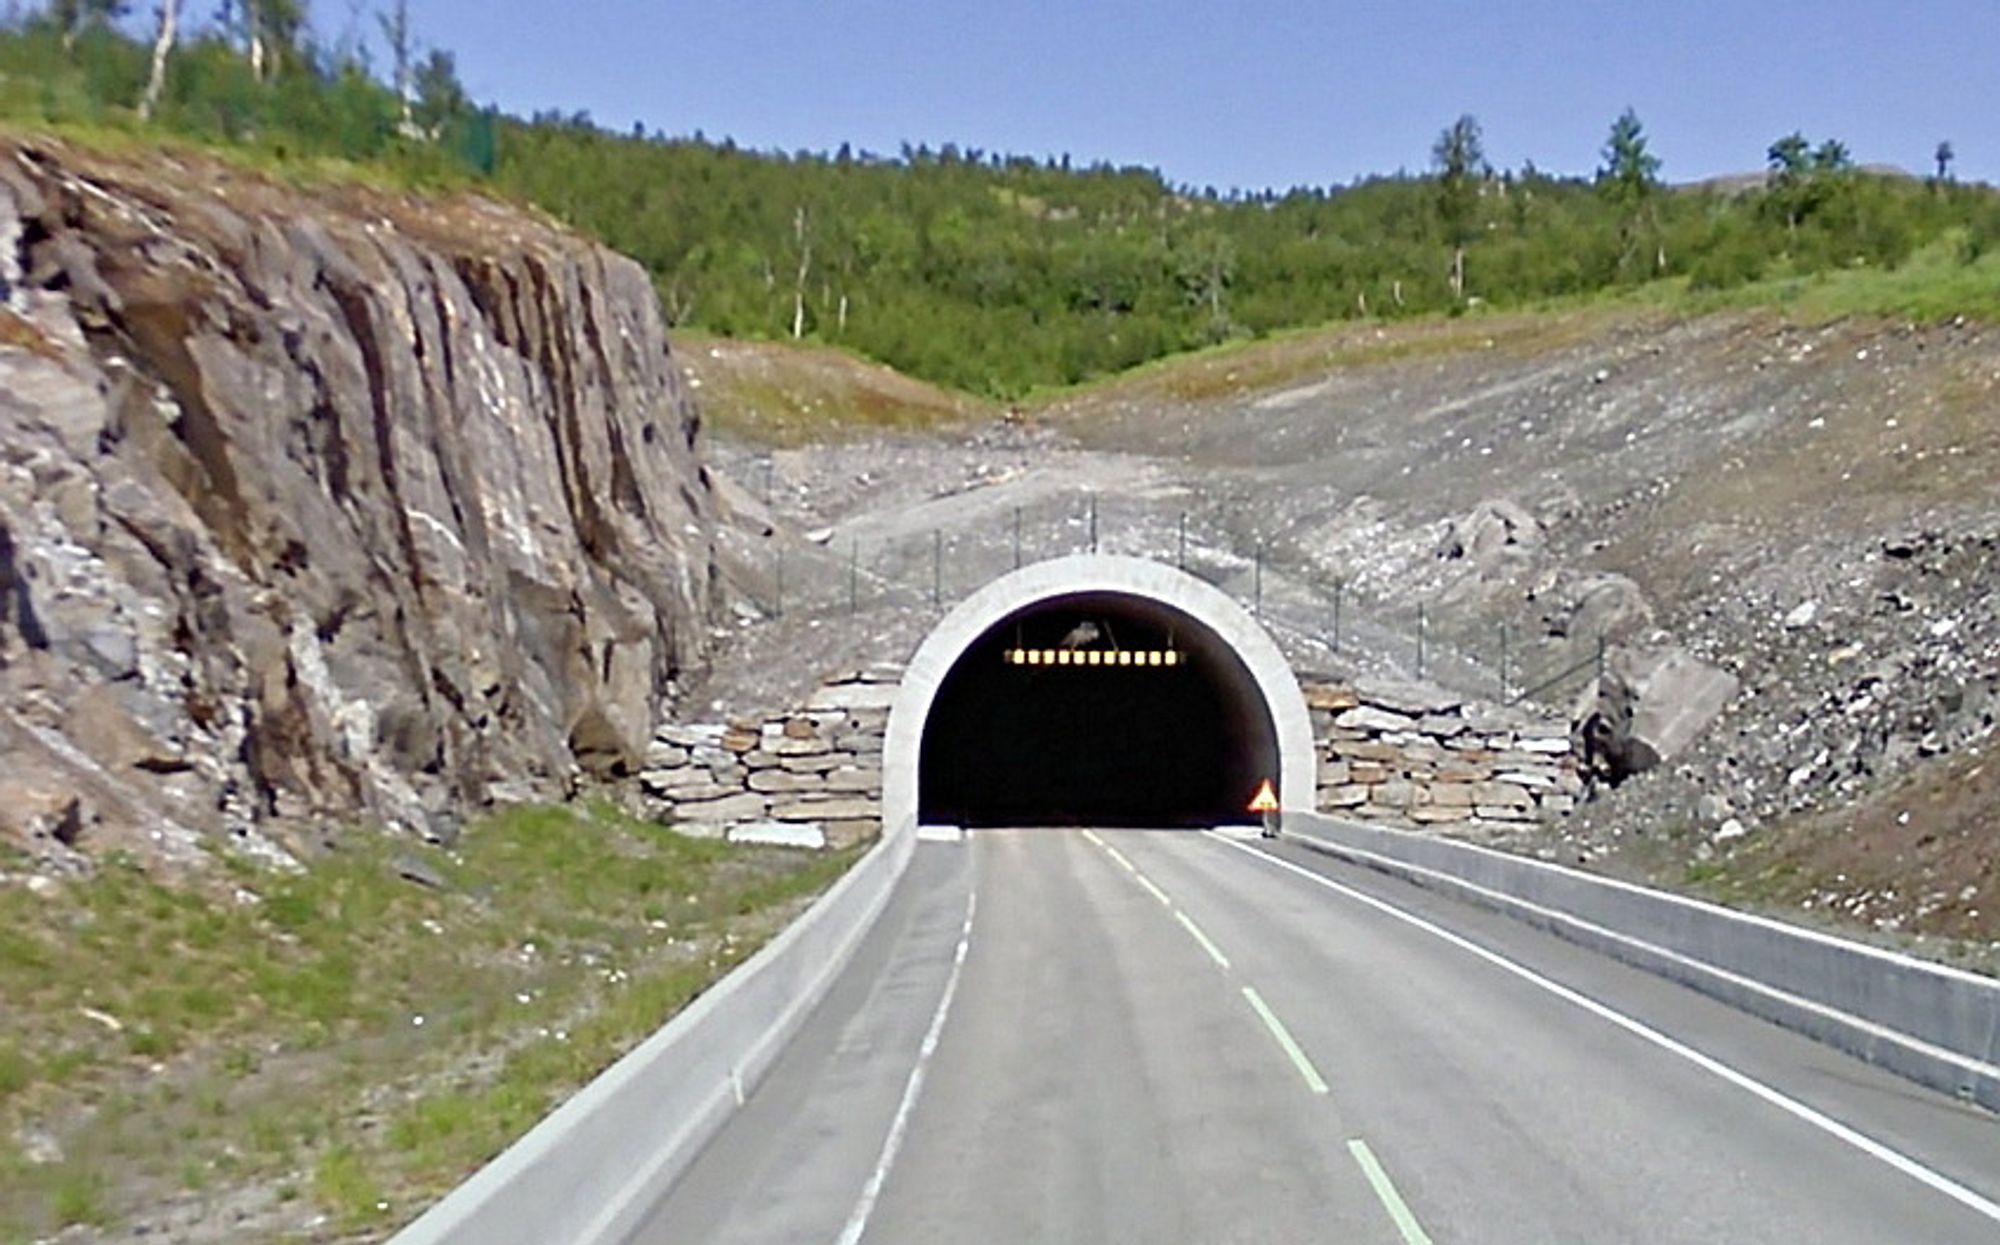 Et arbeidsfellesskap mellom Hans Johnny Høgås fra Mo i Rana og M3 Anlegg fra Bodø har fått kontrakten på oppgradering av Umskartunnelen. (Foto: Google)